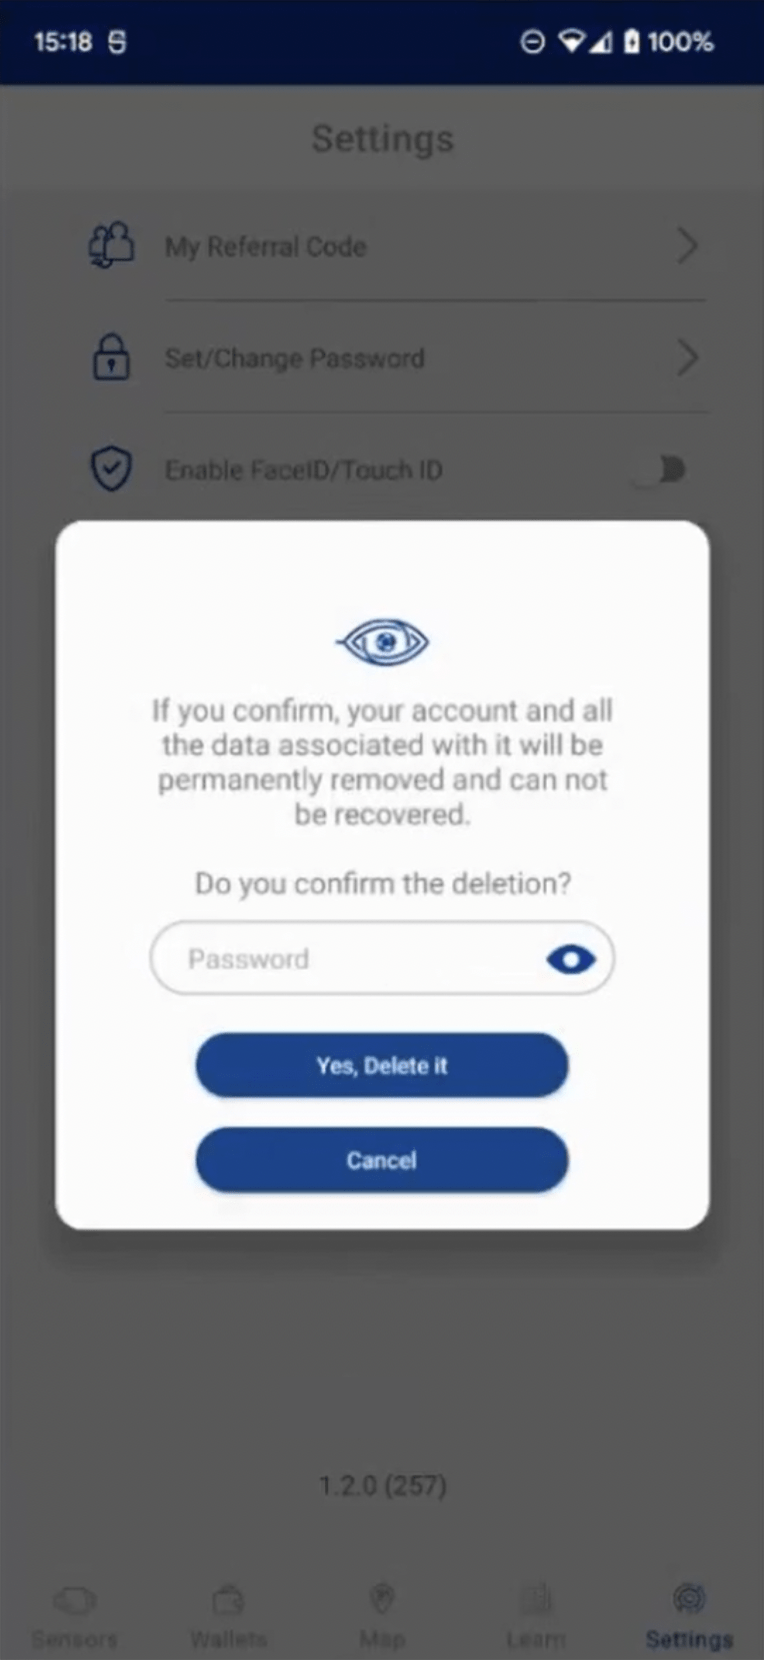 Delete account - App 1.2 update 